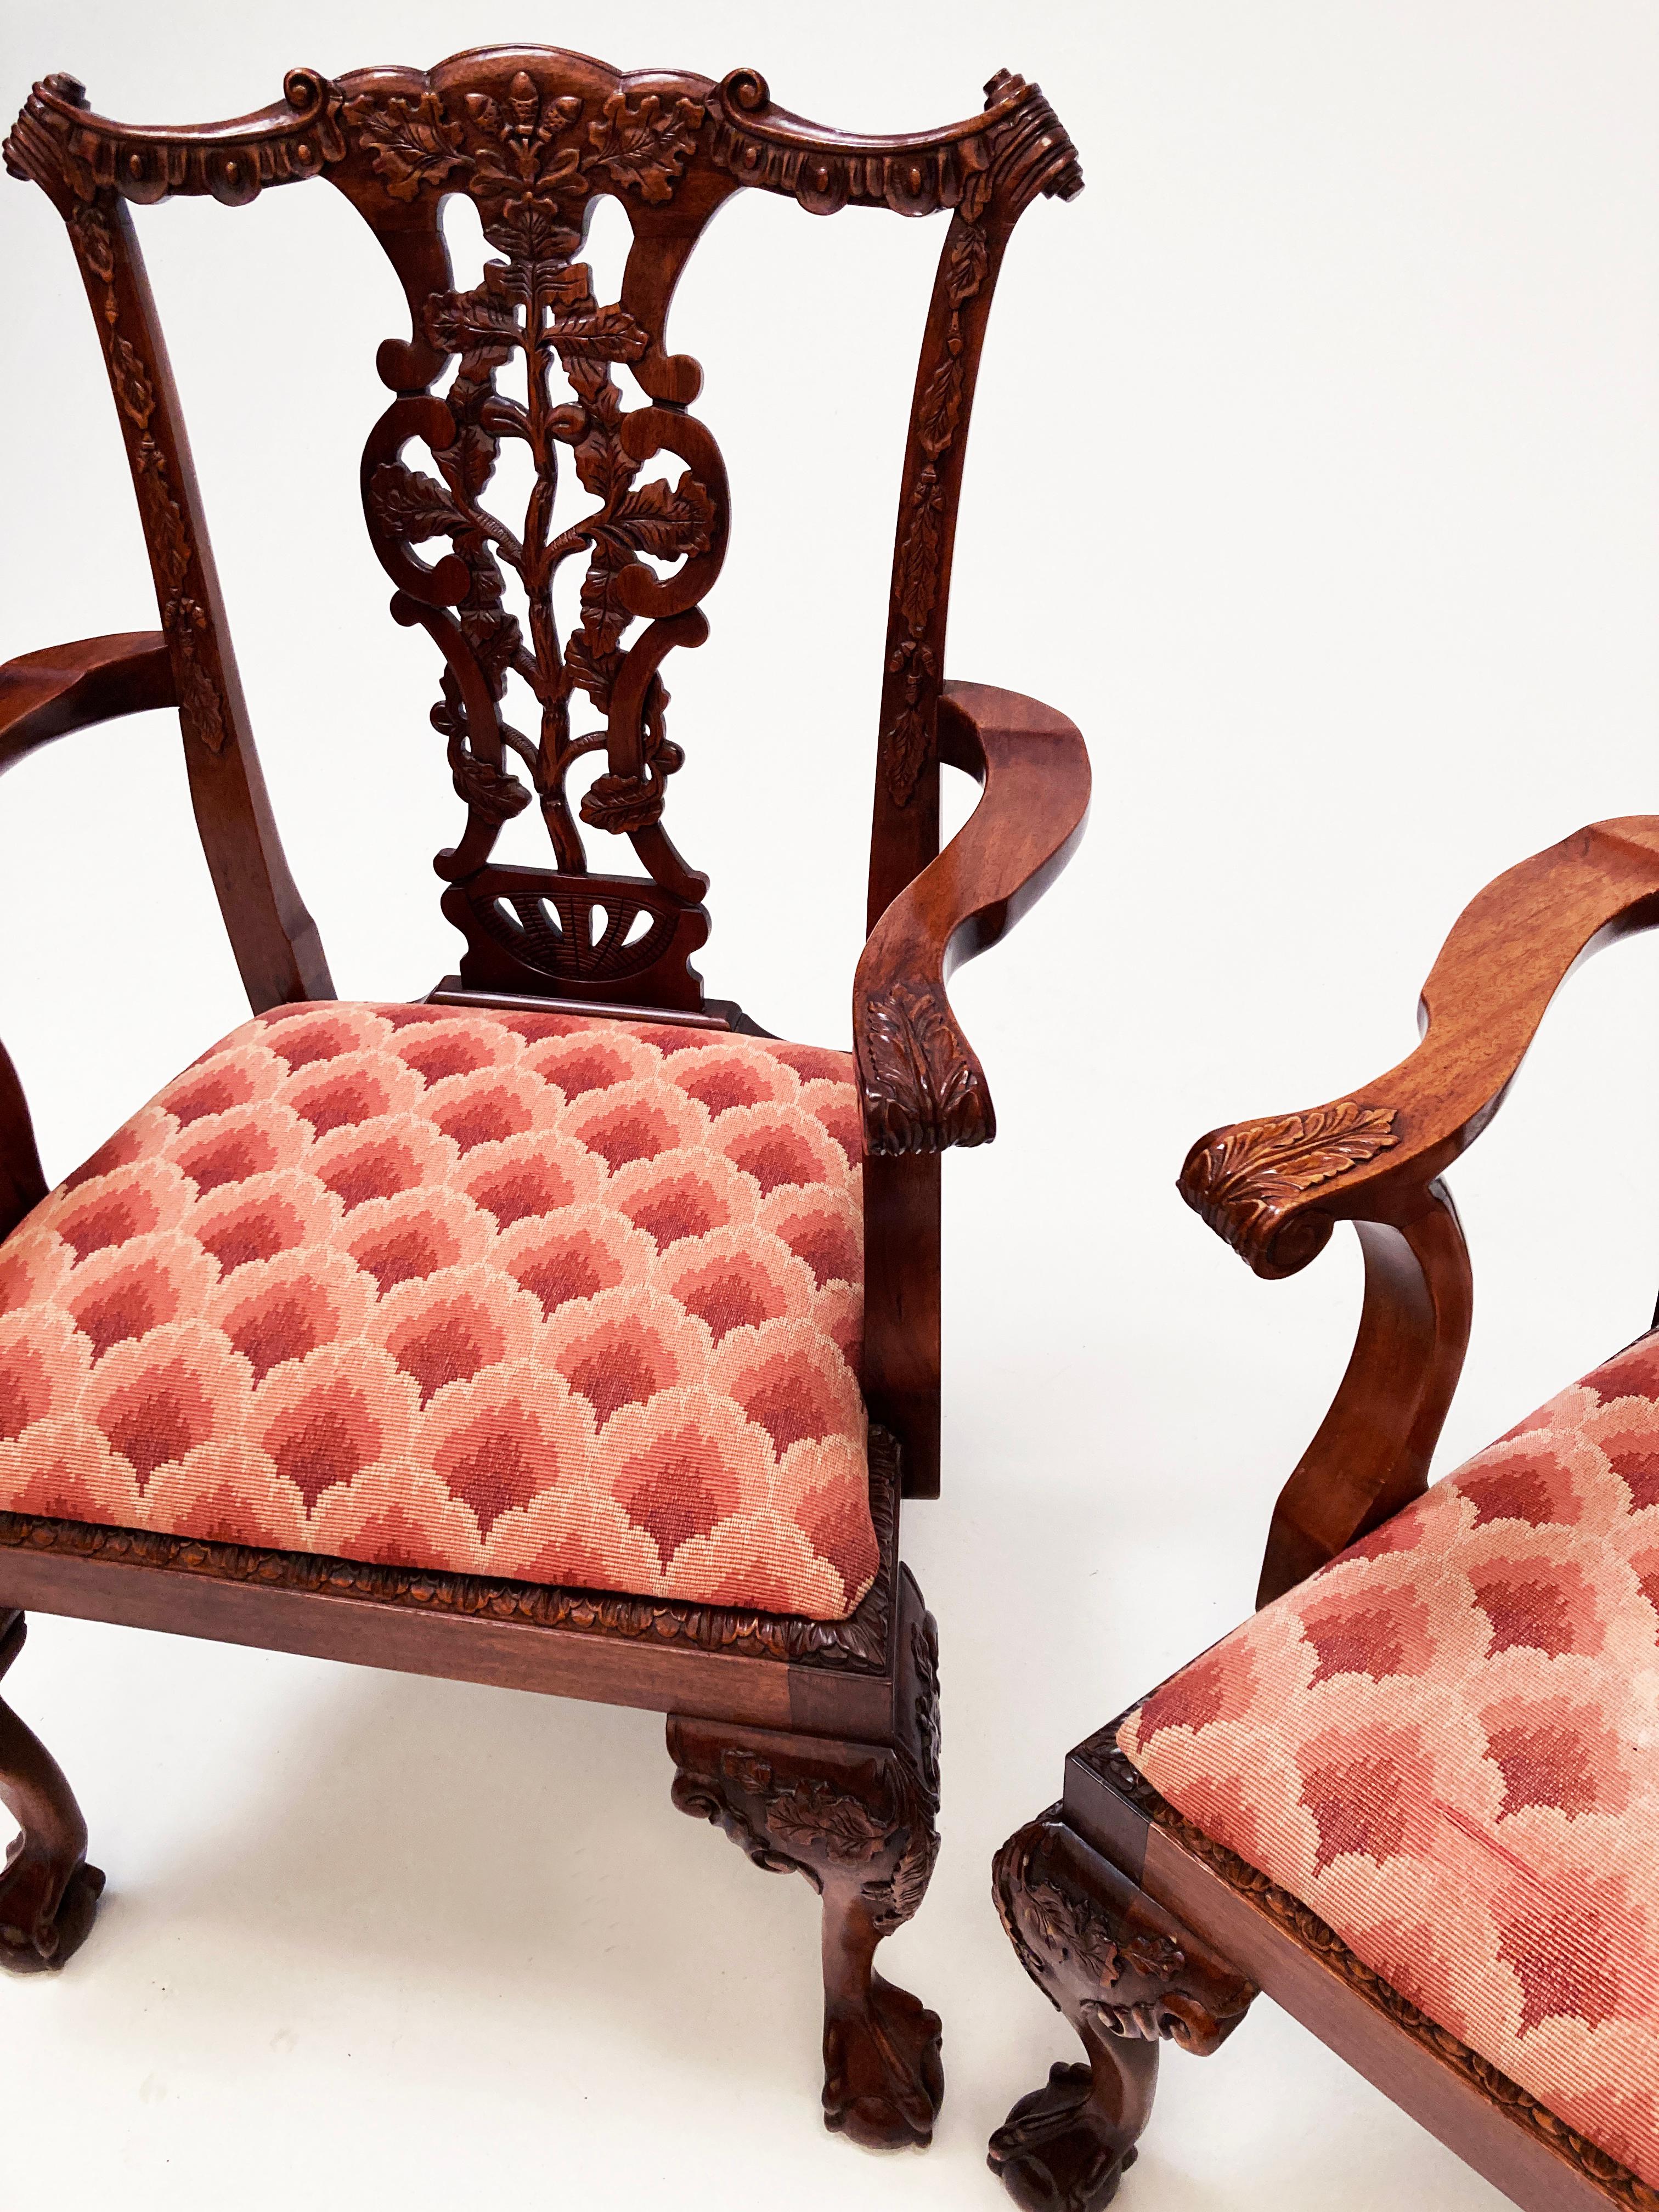 Ces chaises de salle à manger de style Eleg ont été fabriquées dans un riche bois d'acajou d'une élégance inégalée. Le dos ajouré présente un chêne sculpté à la main, des feuilles et des glands entrelacés dans un treillis festonné uniforme.